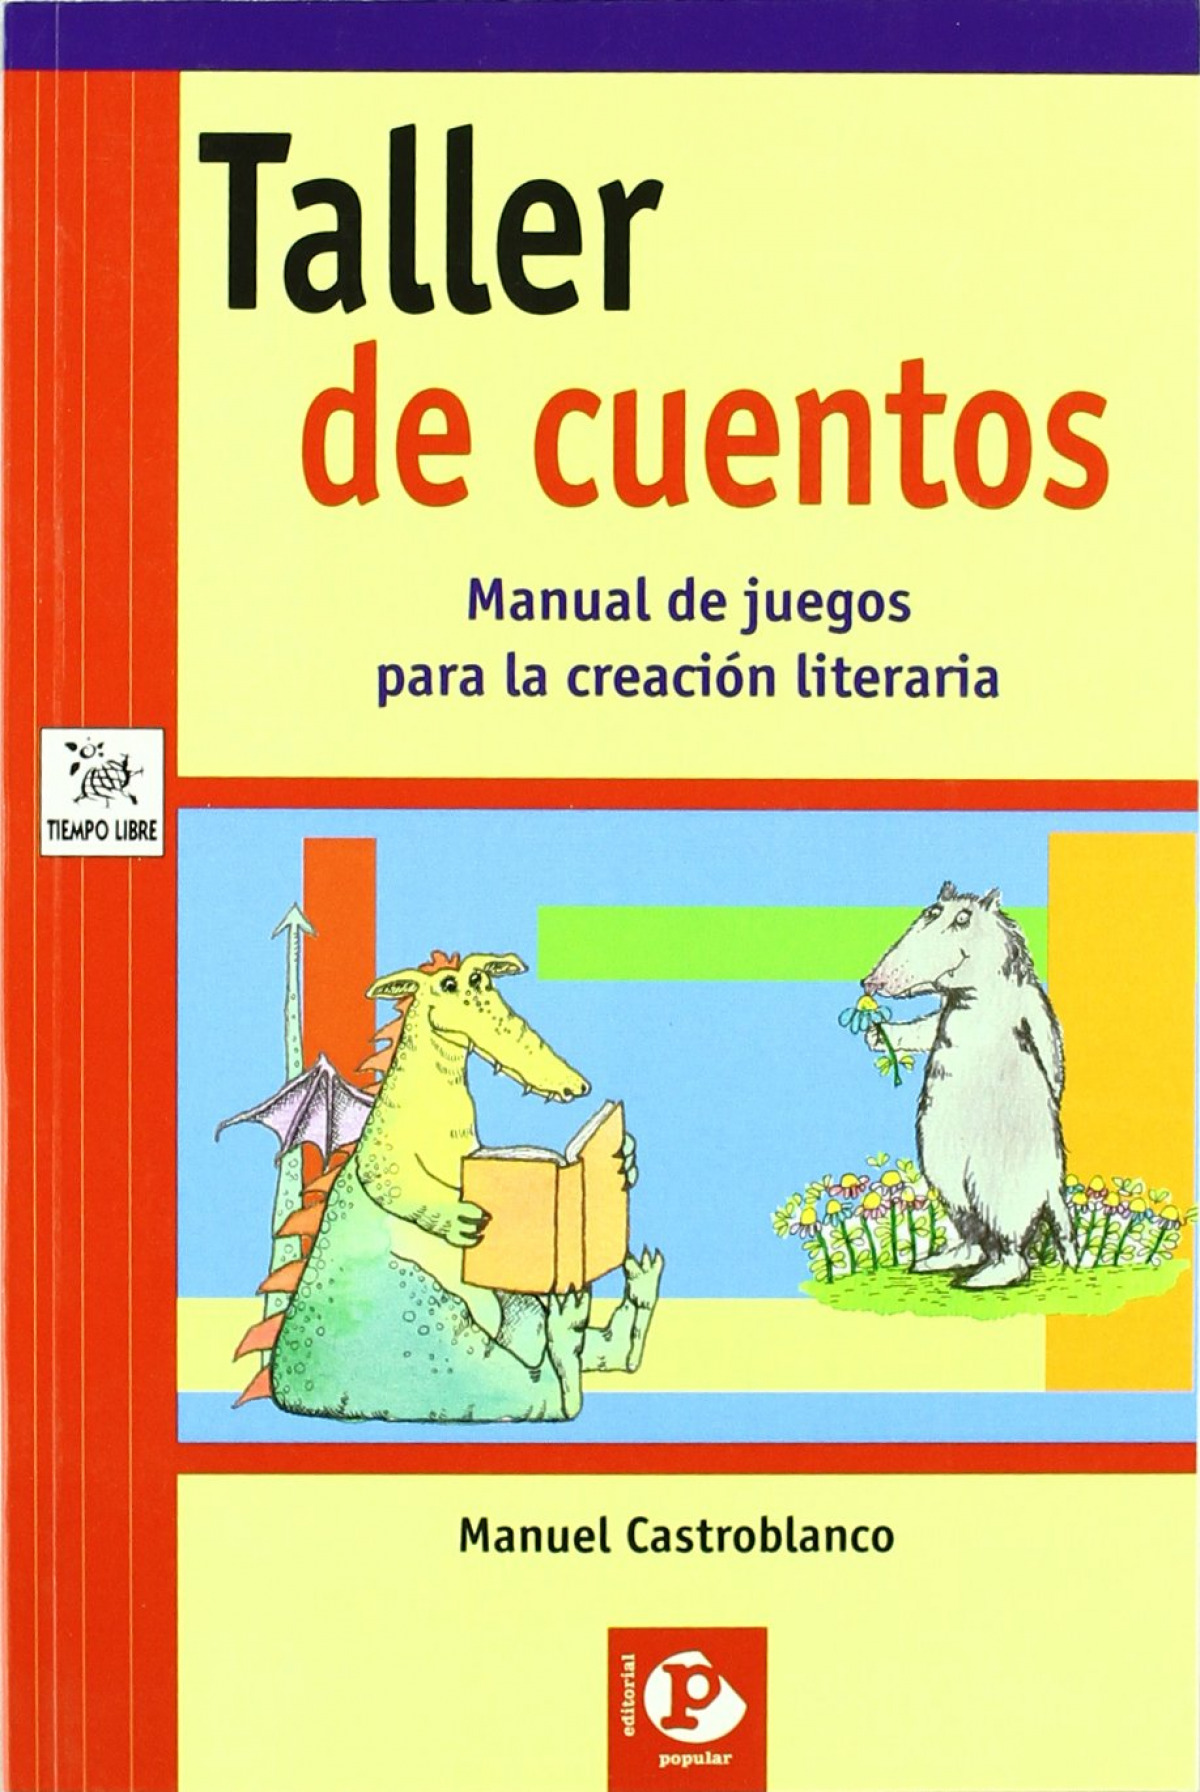 Taller de cuentos. Manual de juegos para la creación literaria - Manuel Castroblanco